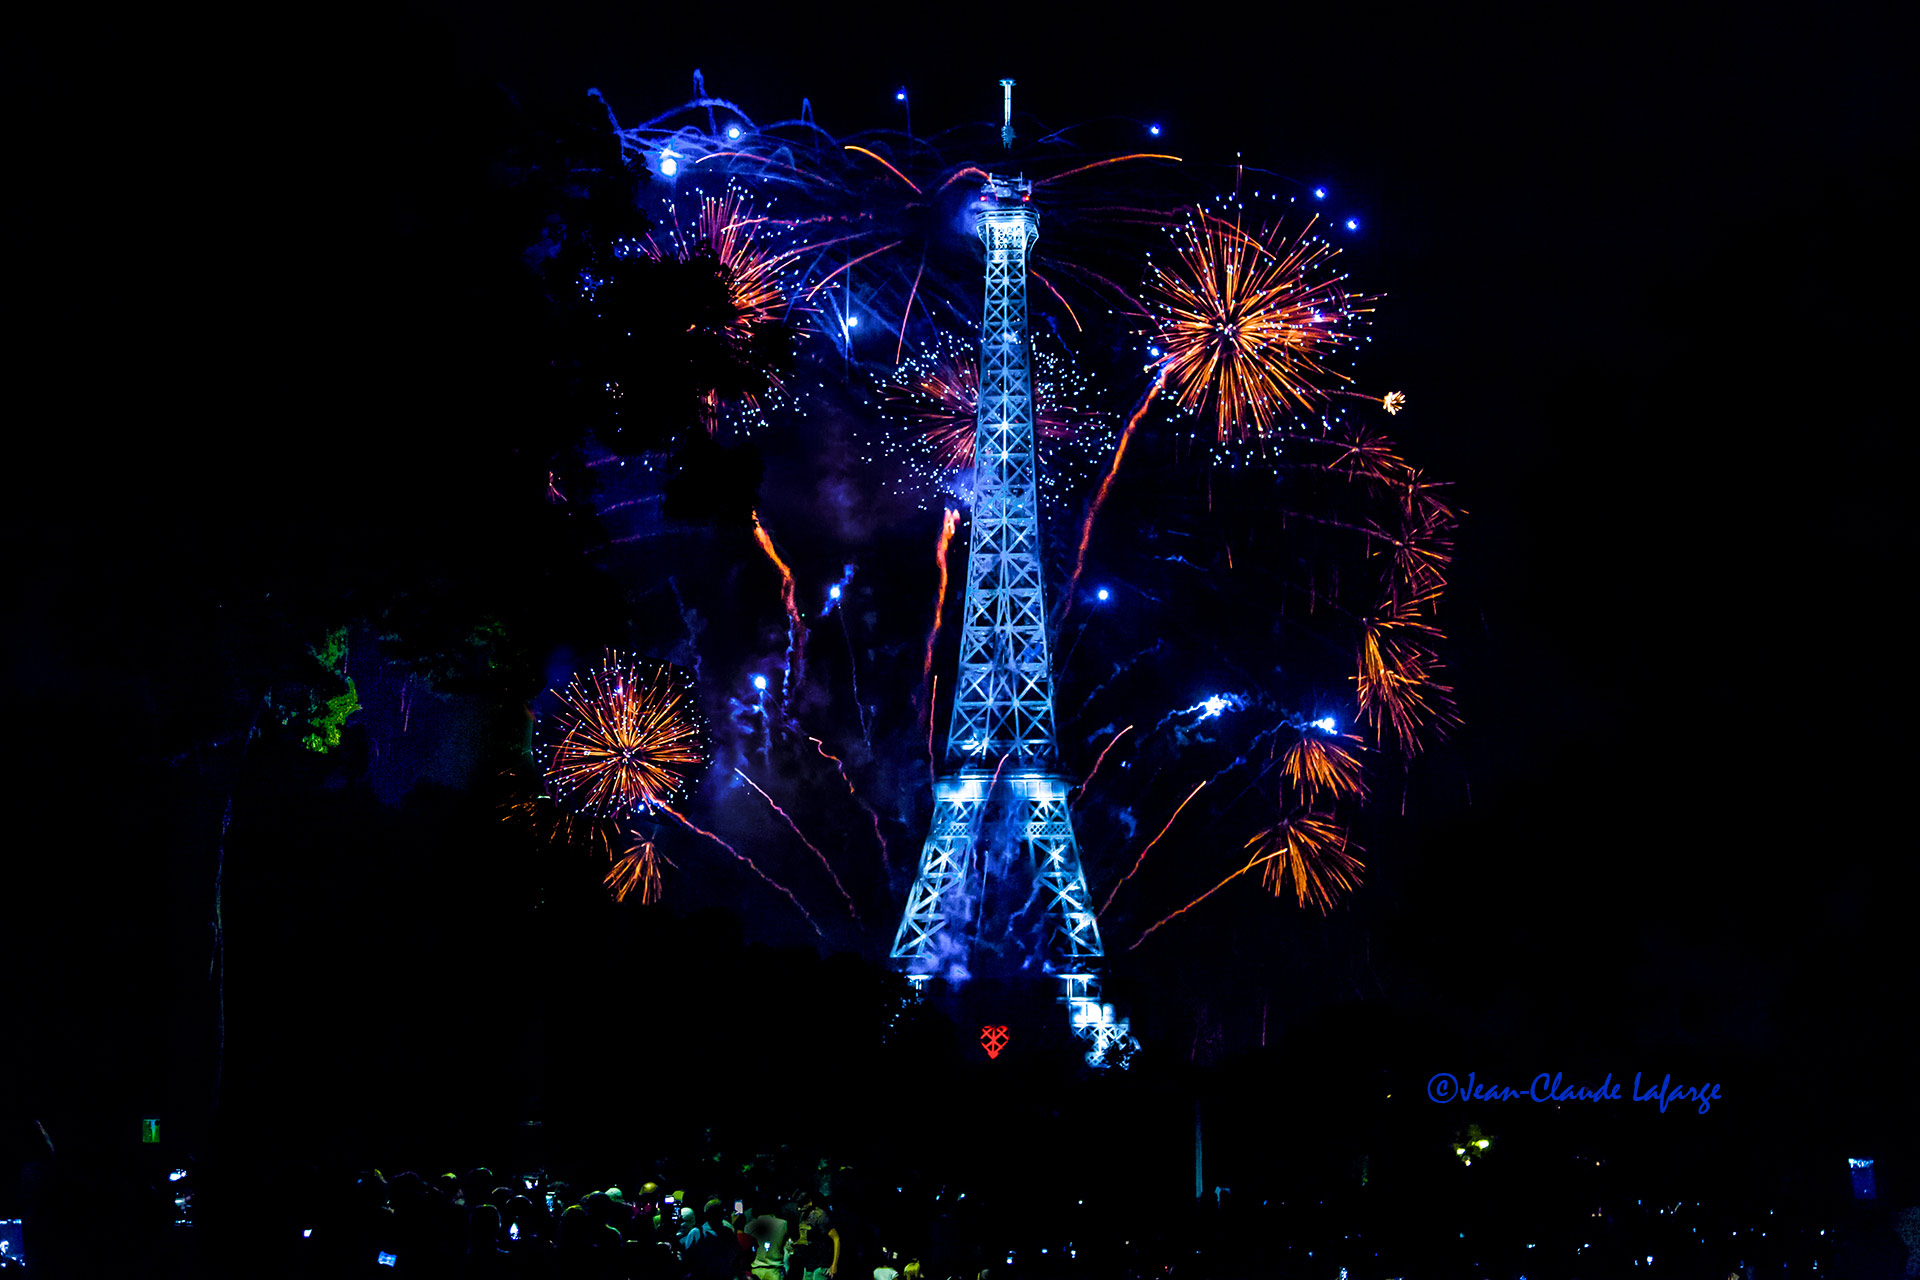  Le magnifique feu d'artifice du 14 juillet de Paris est tiré de la Tour Eiffel